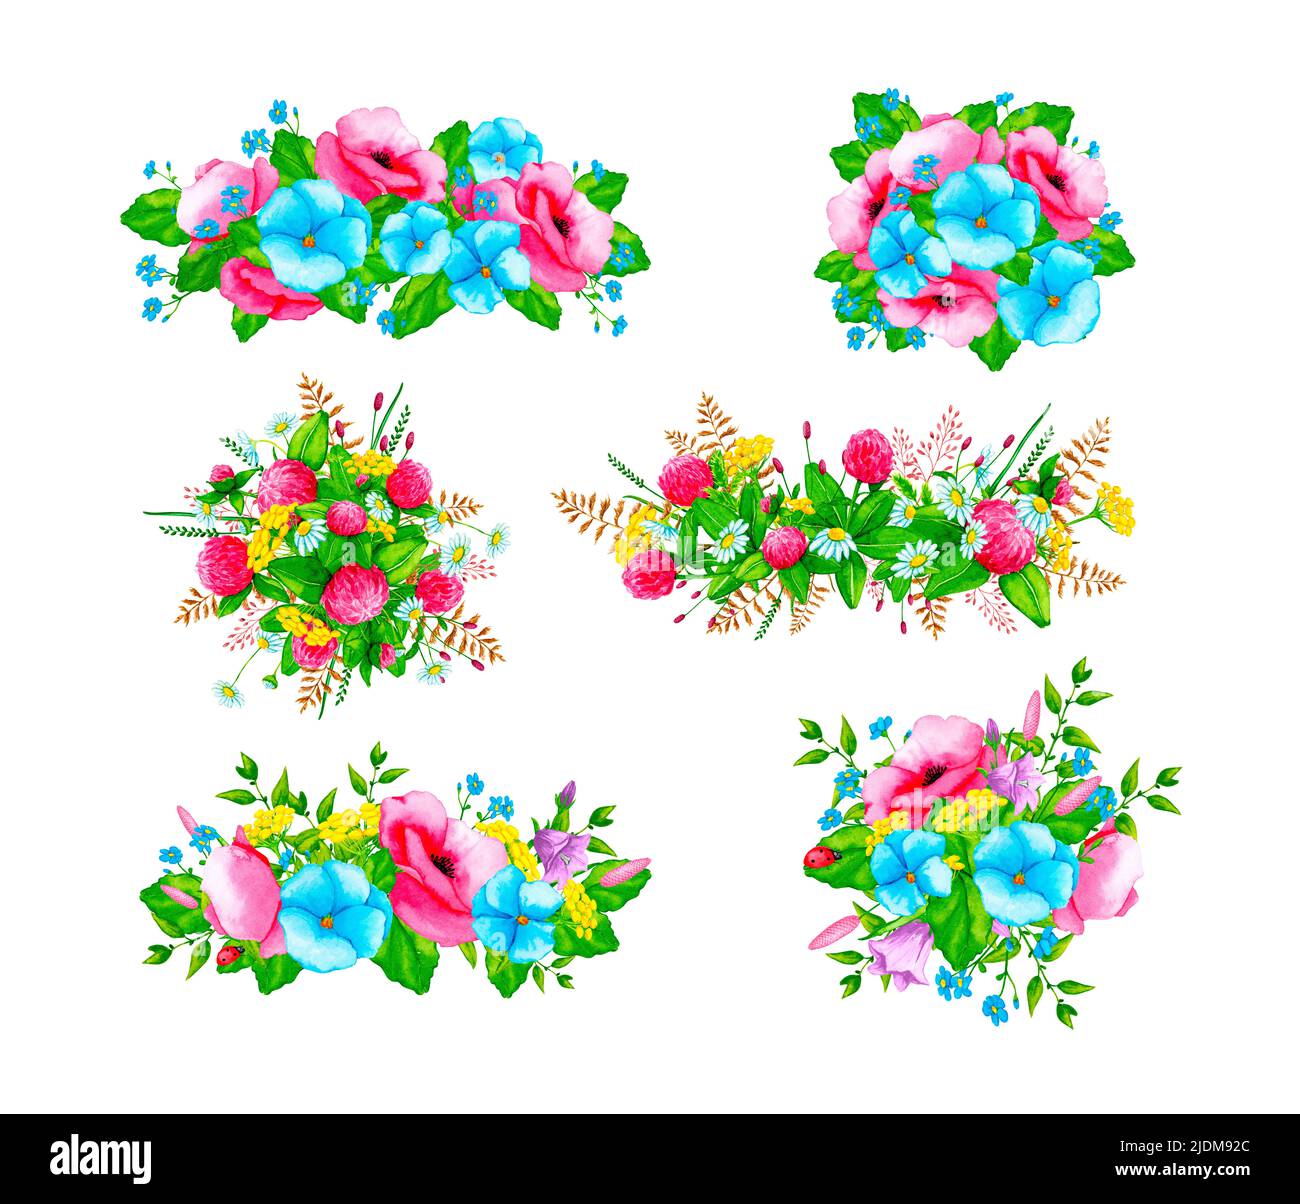 Eine Reihe von Aquarellkompositionen mit Wildblumen und wilden Kräutern. Gestaltungselement für Karten, Einladungen, Poster, Stoffdrucke, Muster, Schreibwaren. Stockfoto